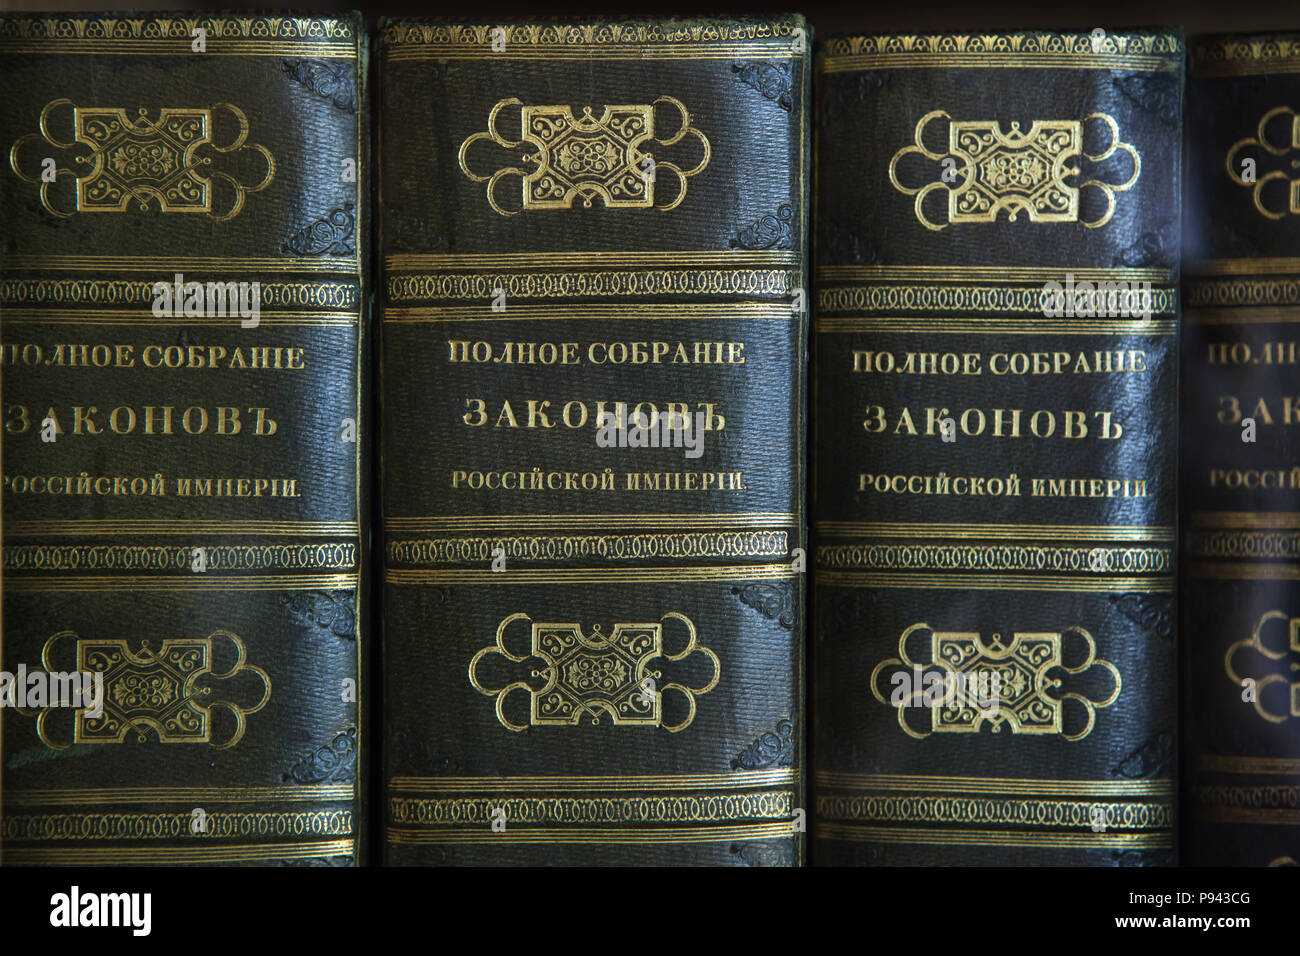 Collezione completa delle leggi dell'impero russo sul display nella biblioteca del Tsar Nicholas II nel palazzo d'inverno a San Pietroburgo, Russia. Foto Stock